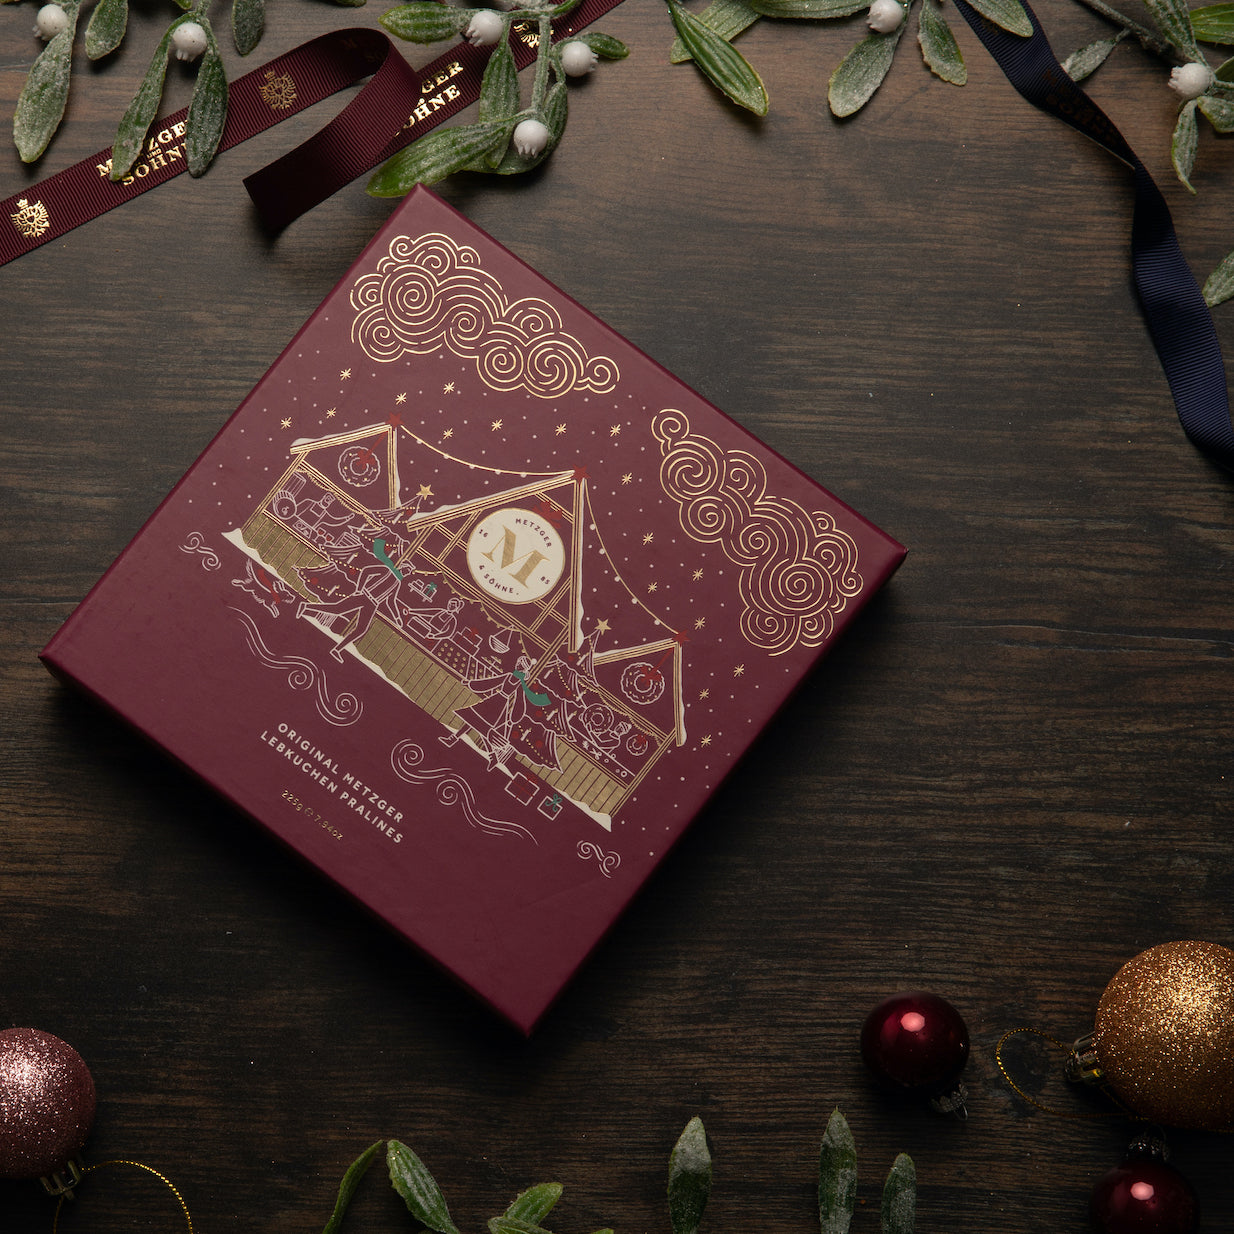 Diese exklusive Weihnachts Lebkuchen Pralinen Schachtel in Rot besticht durch die hochwertige Verarbeitund und das Motiv mit Goldfoliendruck! Sie ist gefüllt mit 25 exquisiten und geschmackvoll verzierten Lebkuchenpralinen.